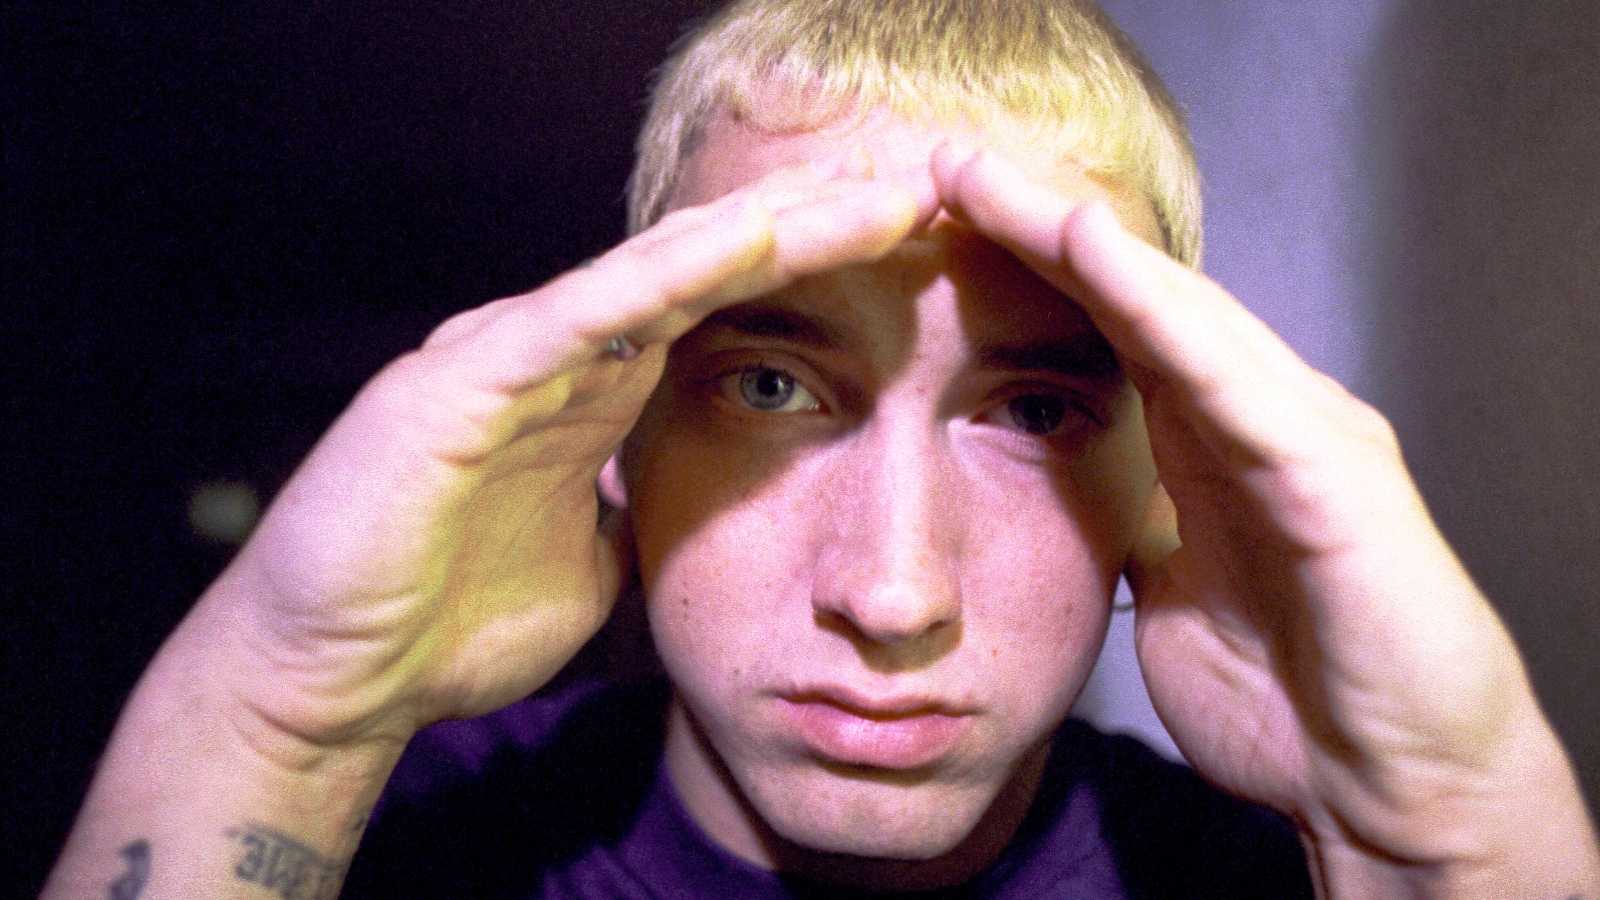 Eminem's Slim Shady alter ego